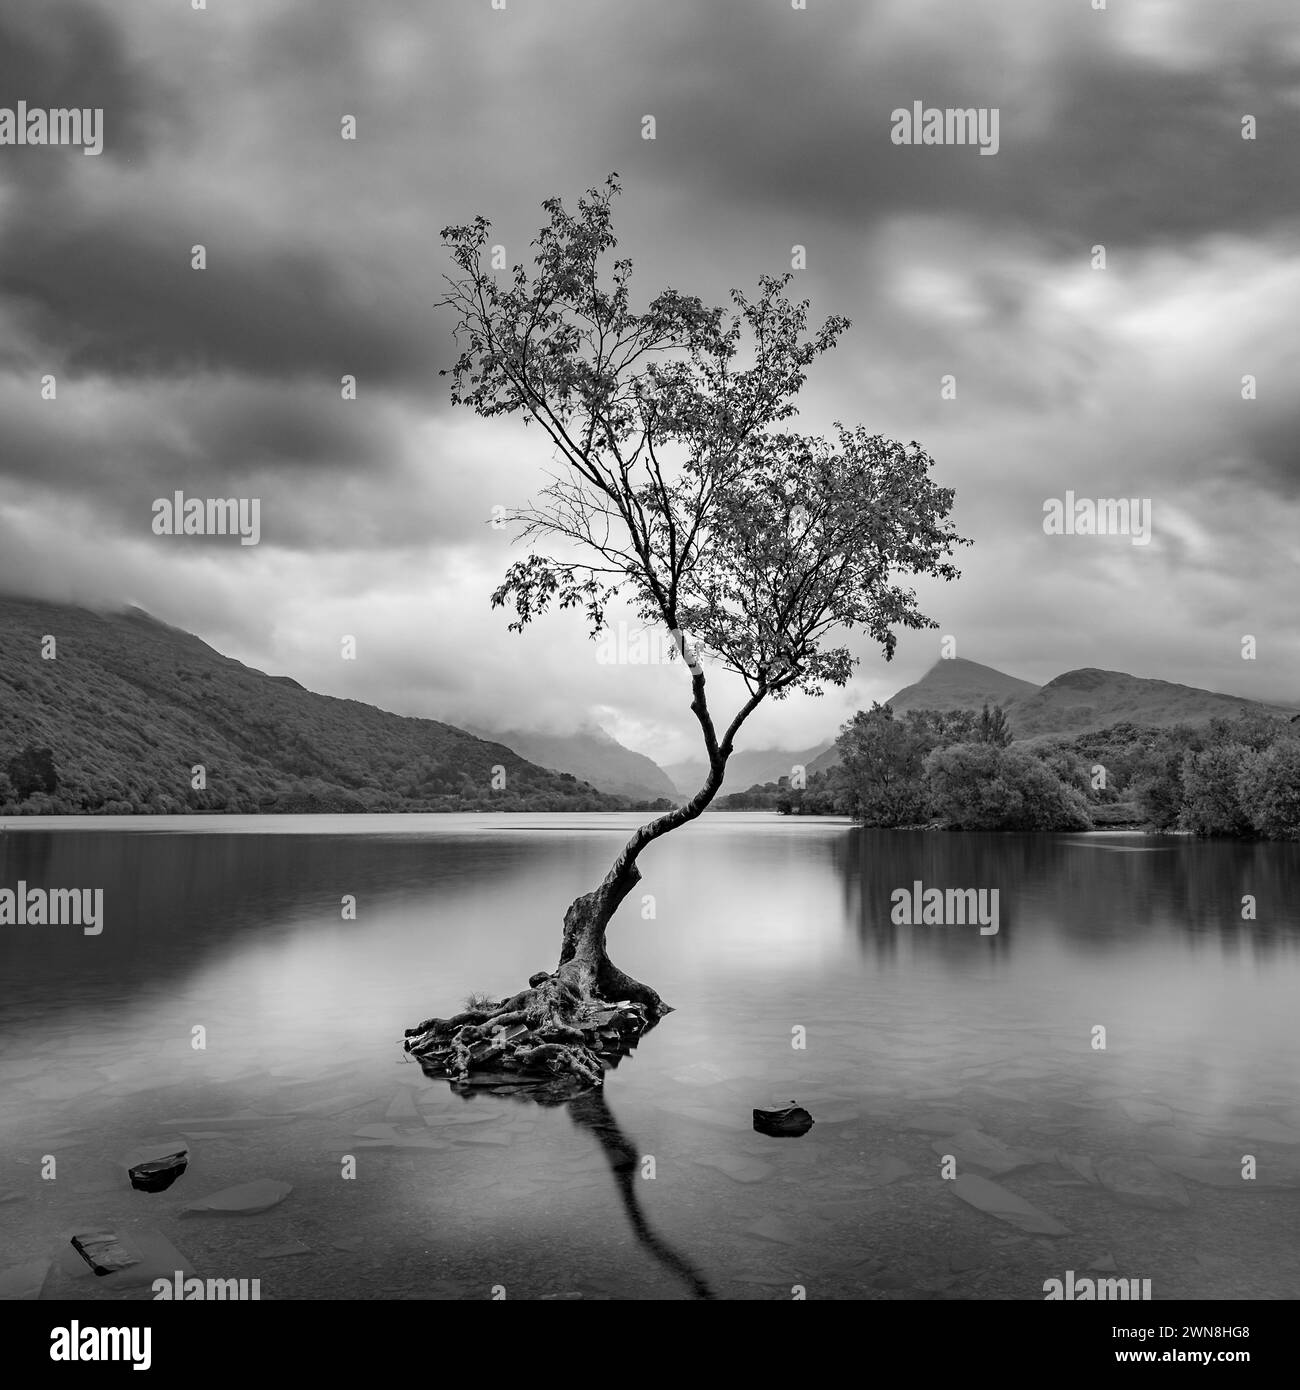 Der Einsame Baum, Llanberis, Snowdonia. Schwarzweiß. Das Wasser ist sehr ruhig und Wolken ziehen sich über den Himmel. Stockfoto